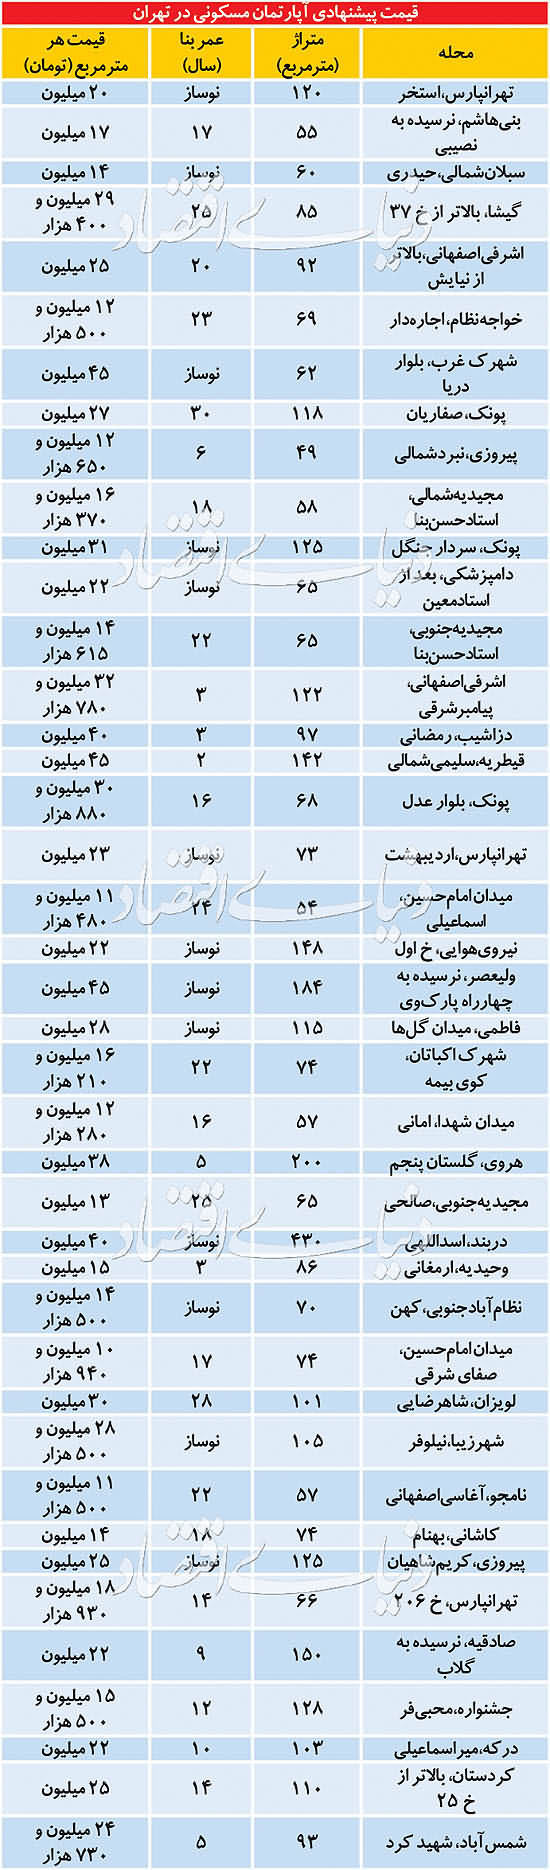 قیمت آپارتمان در تهران ۱۳۹۹/۰۳/۲۰